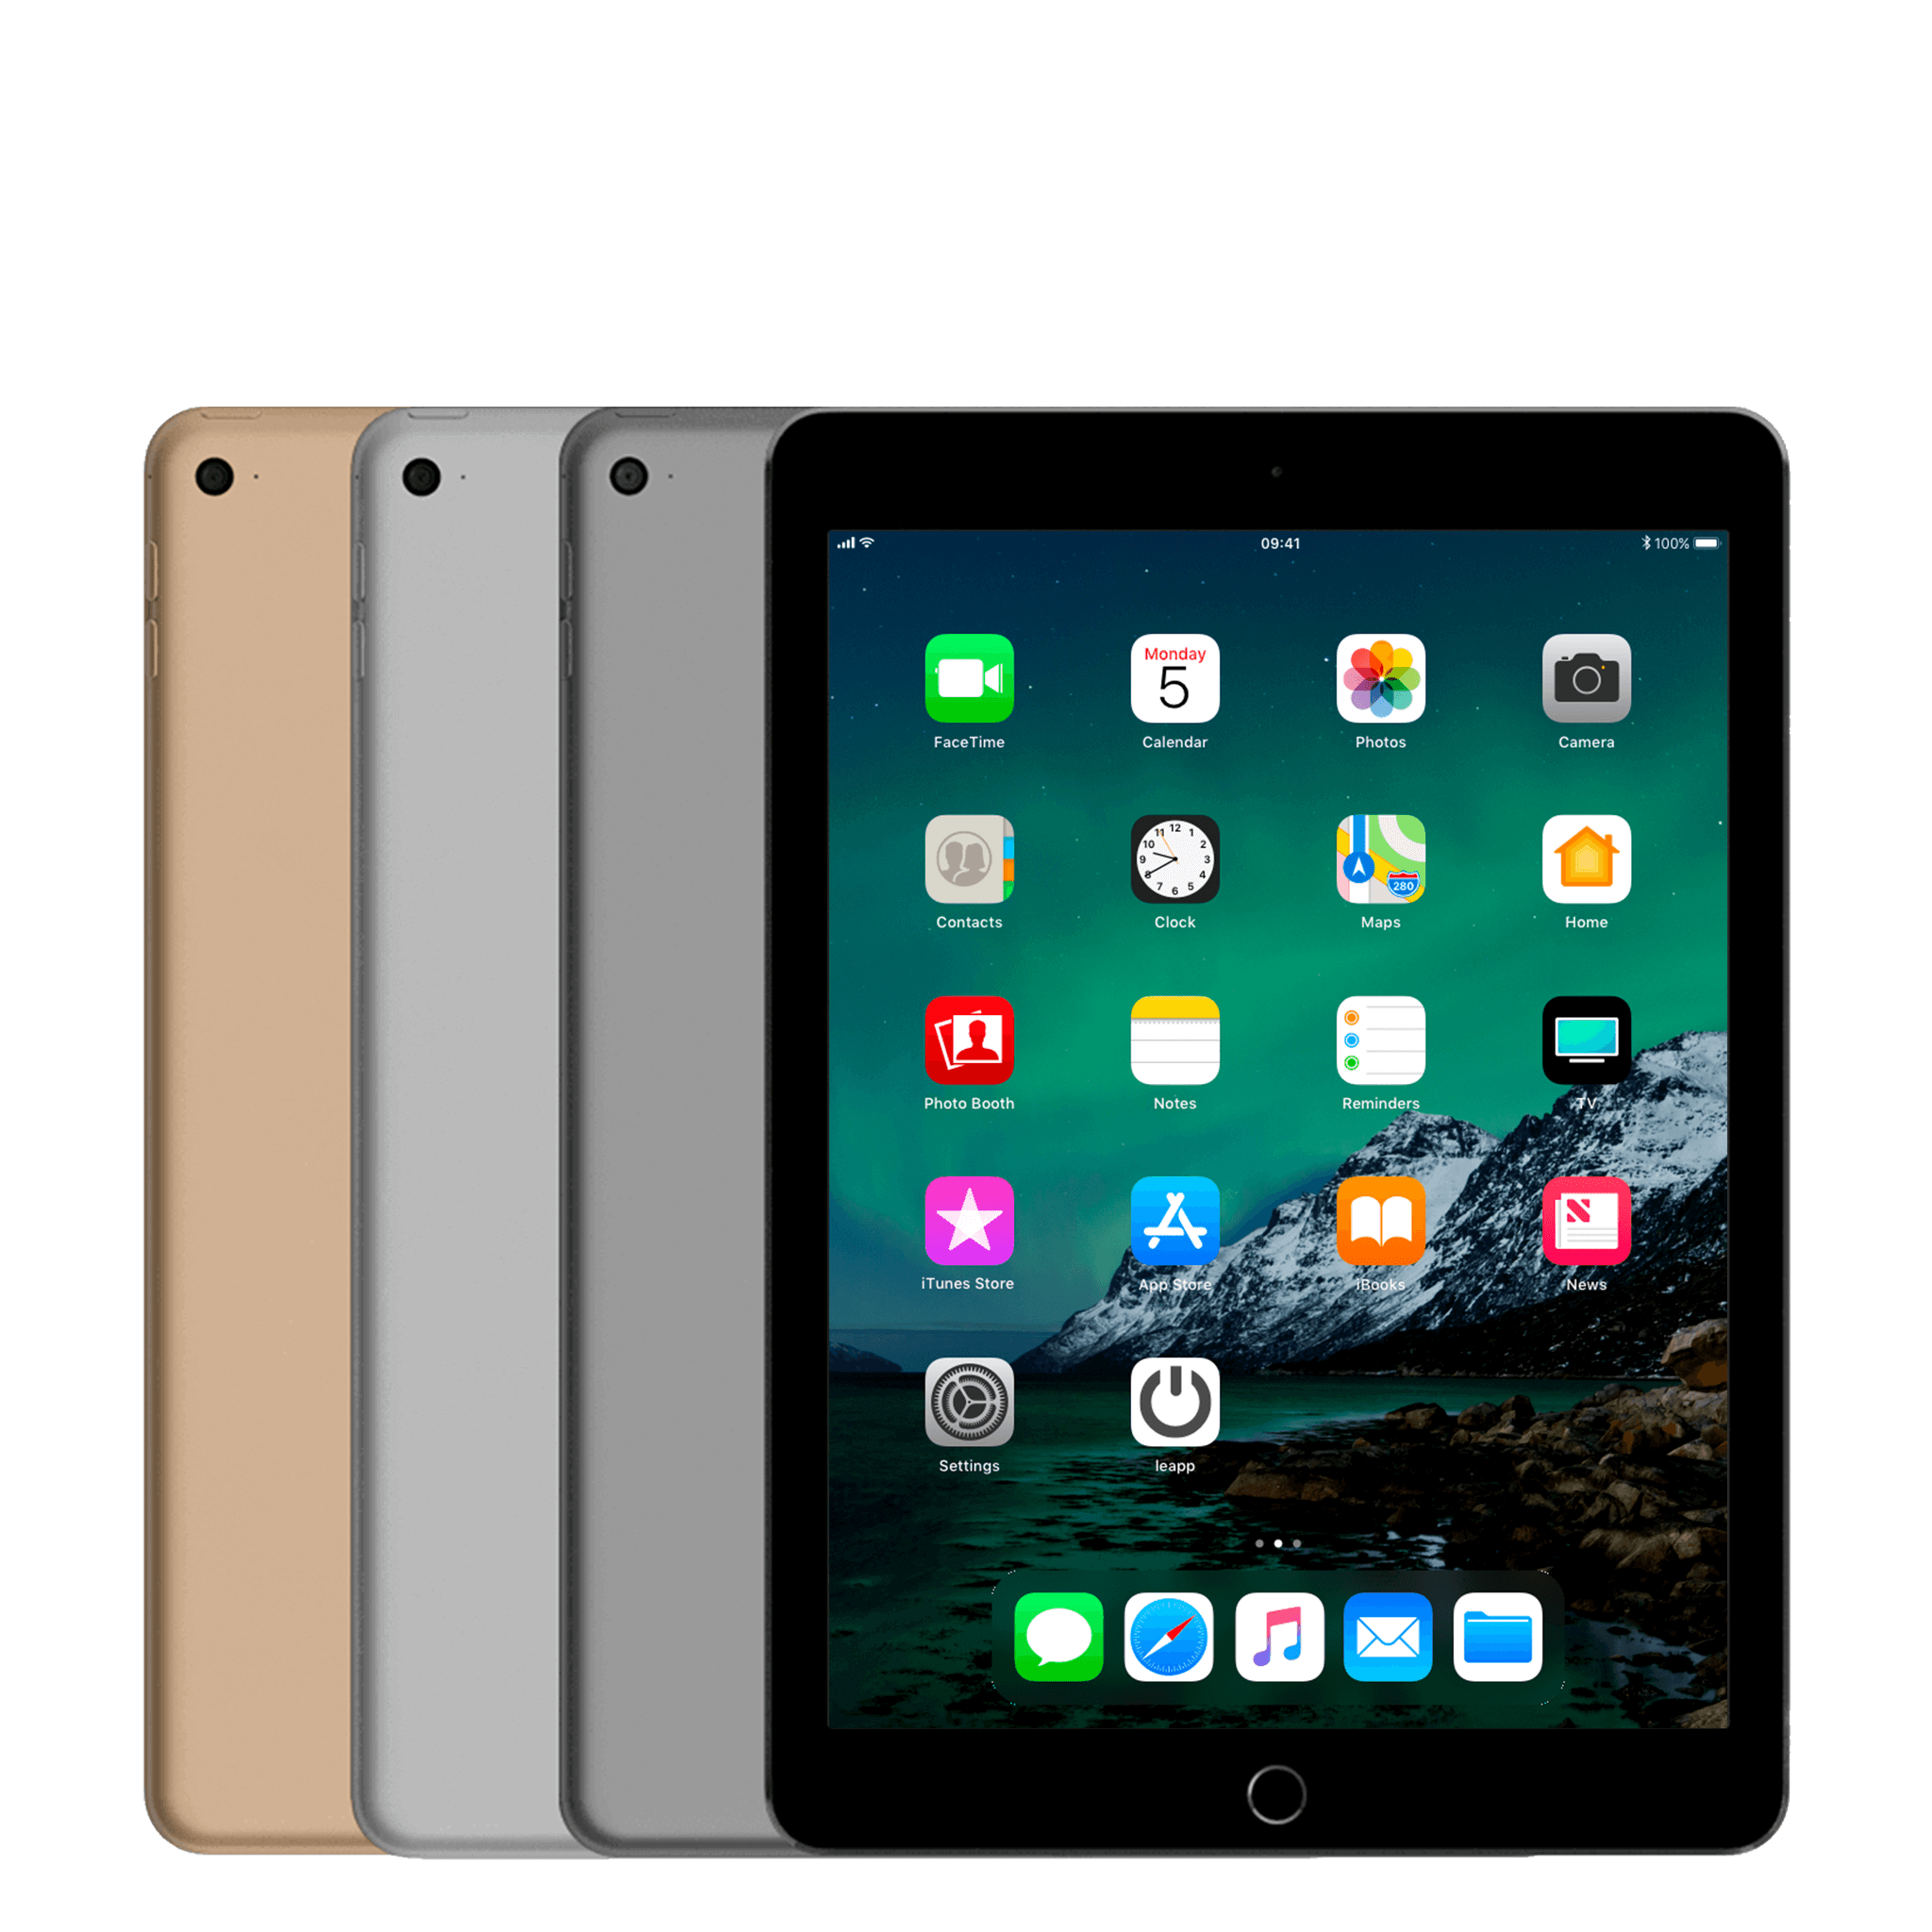 Đánh giá iPad Air 2 mới nhất: Thiết kế sang trọng, hiệu năng ấn tượng